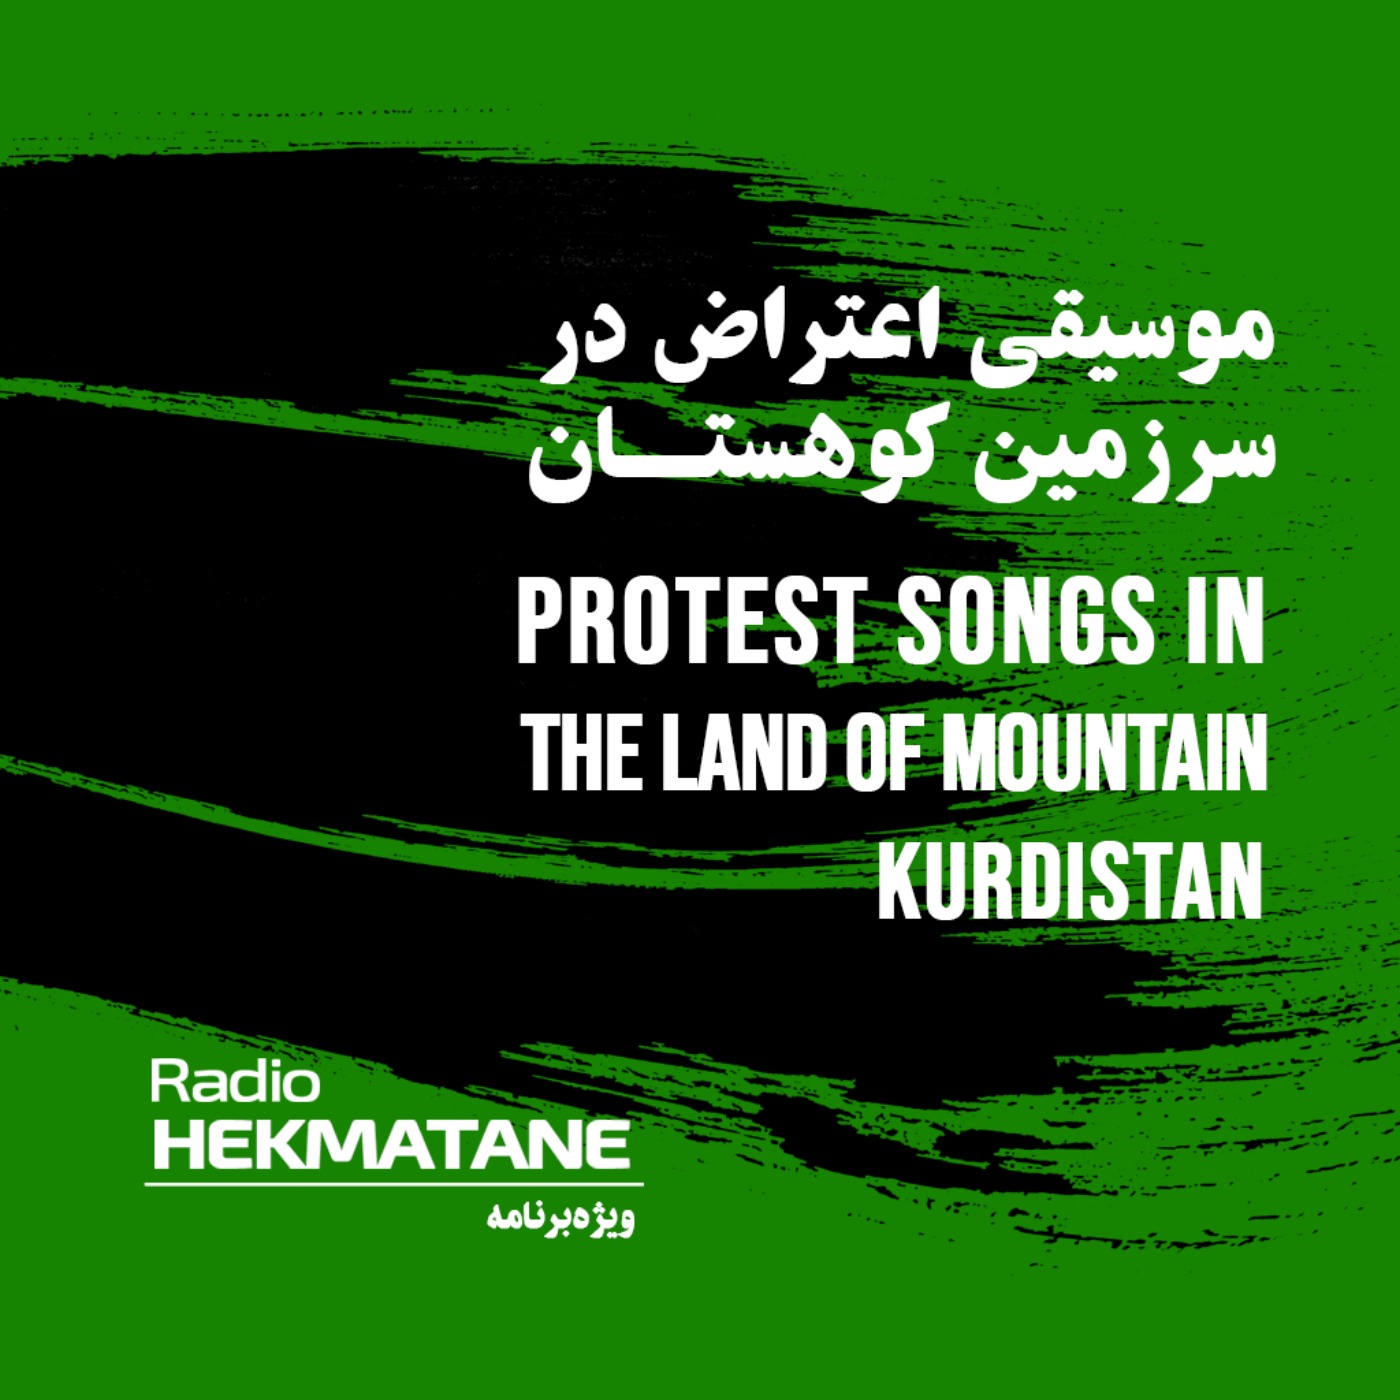 موسیقی اعتراض در سرزمین کوهستان [Kurdistan]